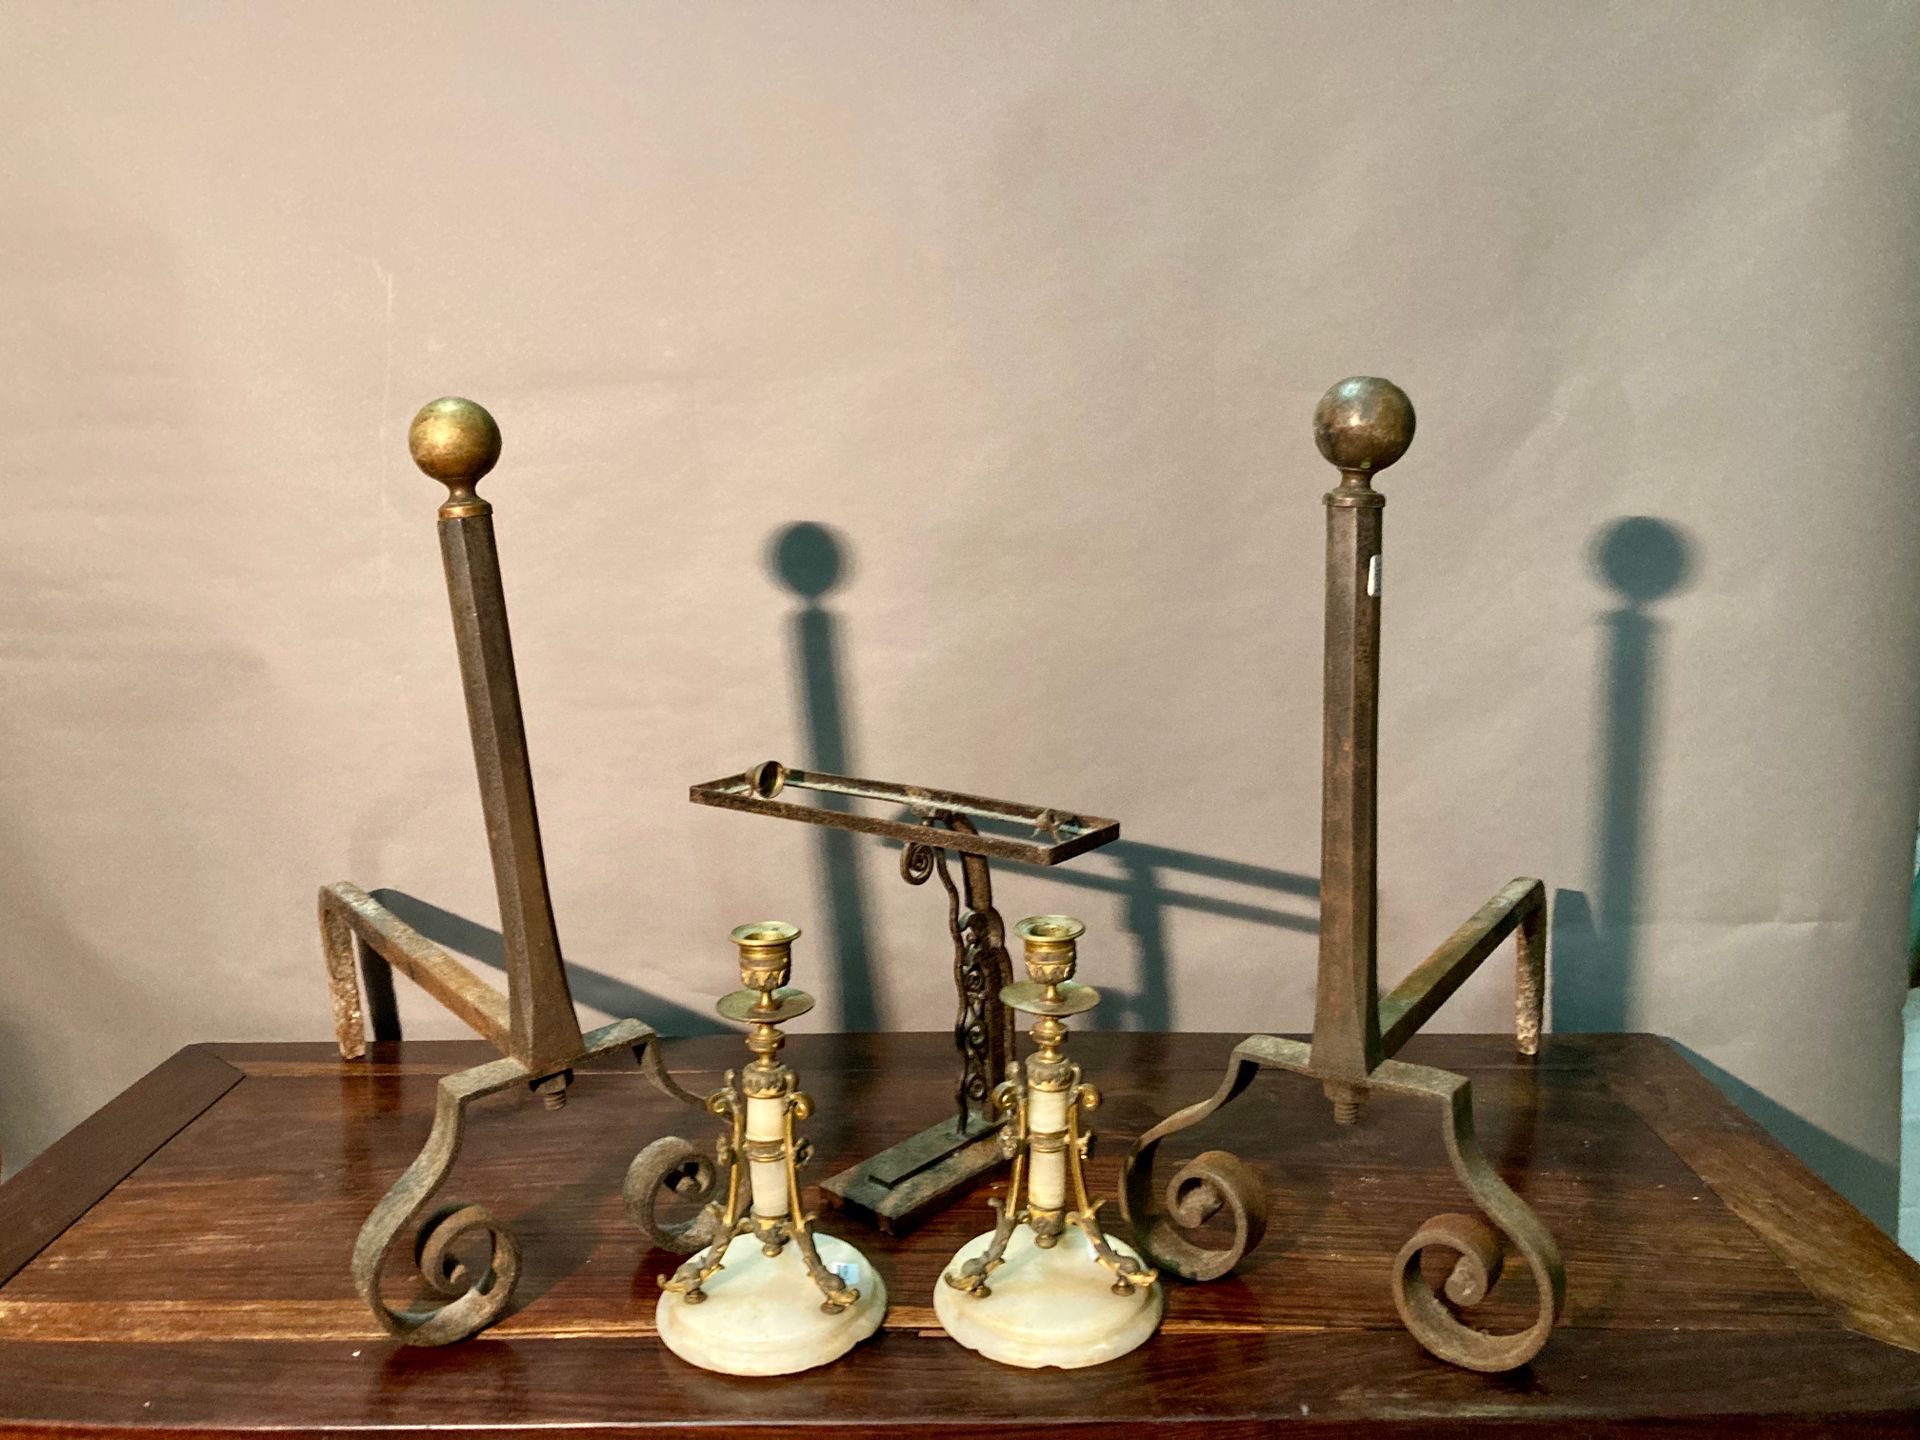 Null 箱子包括：一对雪花石膏和镀金的黄铜烛台；锻铁台灯底座，1930年的风格；一对滚动的壁炉。